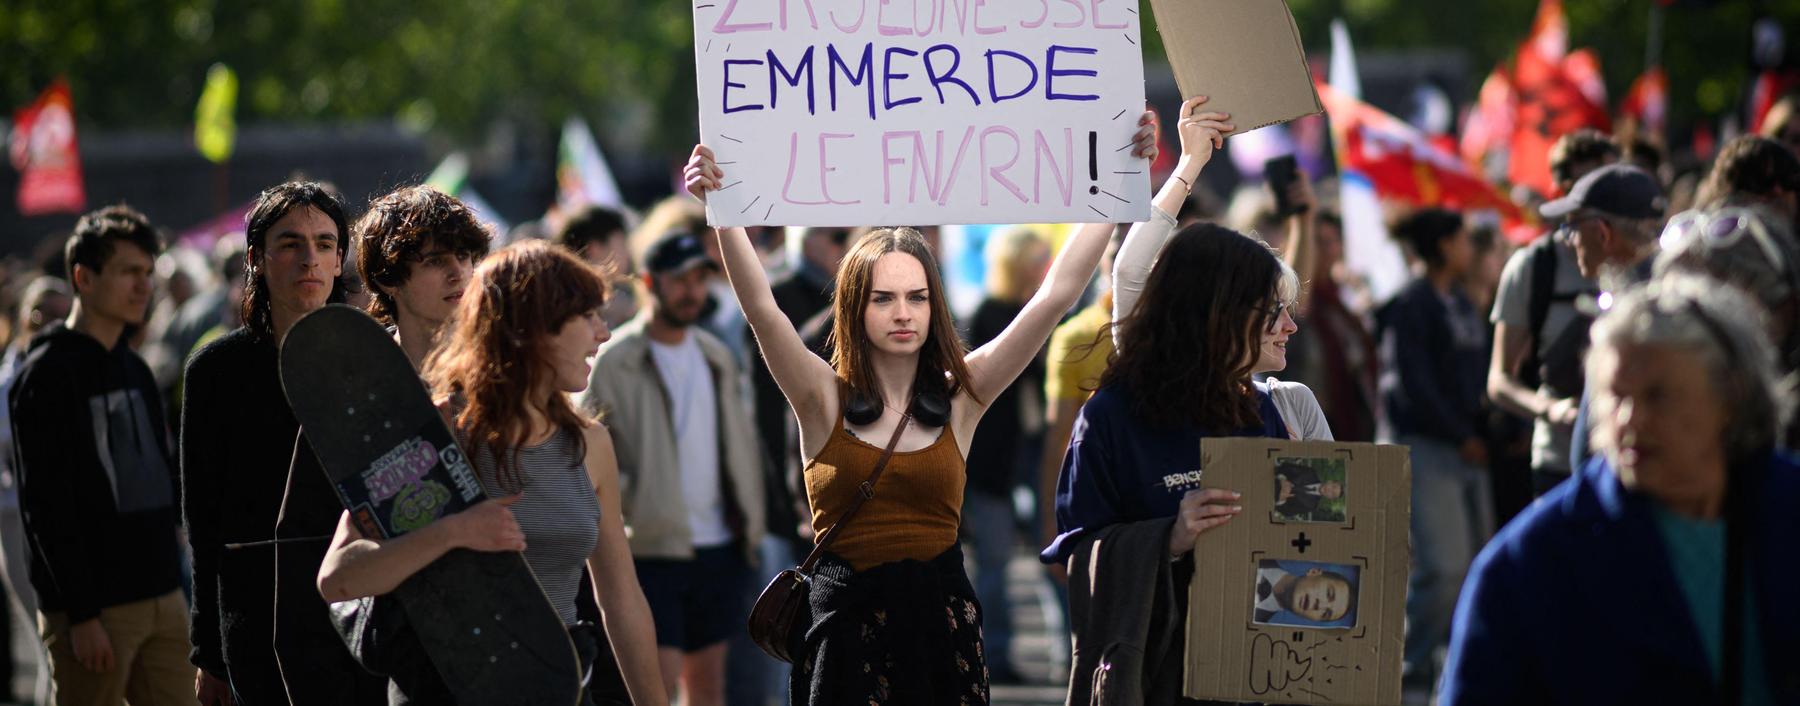 Nicht überall muss „rechtsextrem“ draufstehen: „Die Jugend nervt den FN/RN“ steht auf diesem Plakat bei einer Demo am 11. Juni in Rennes gegen die Partei von Marine Le Pen.